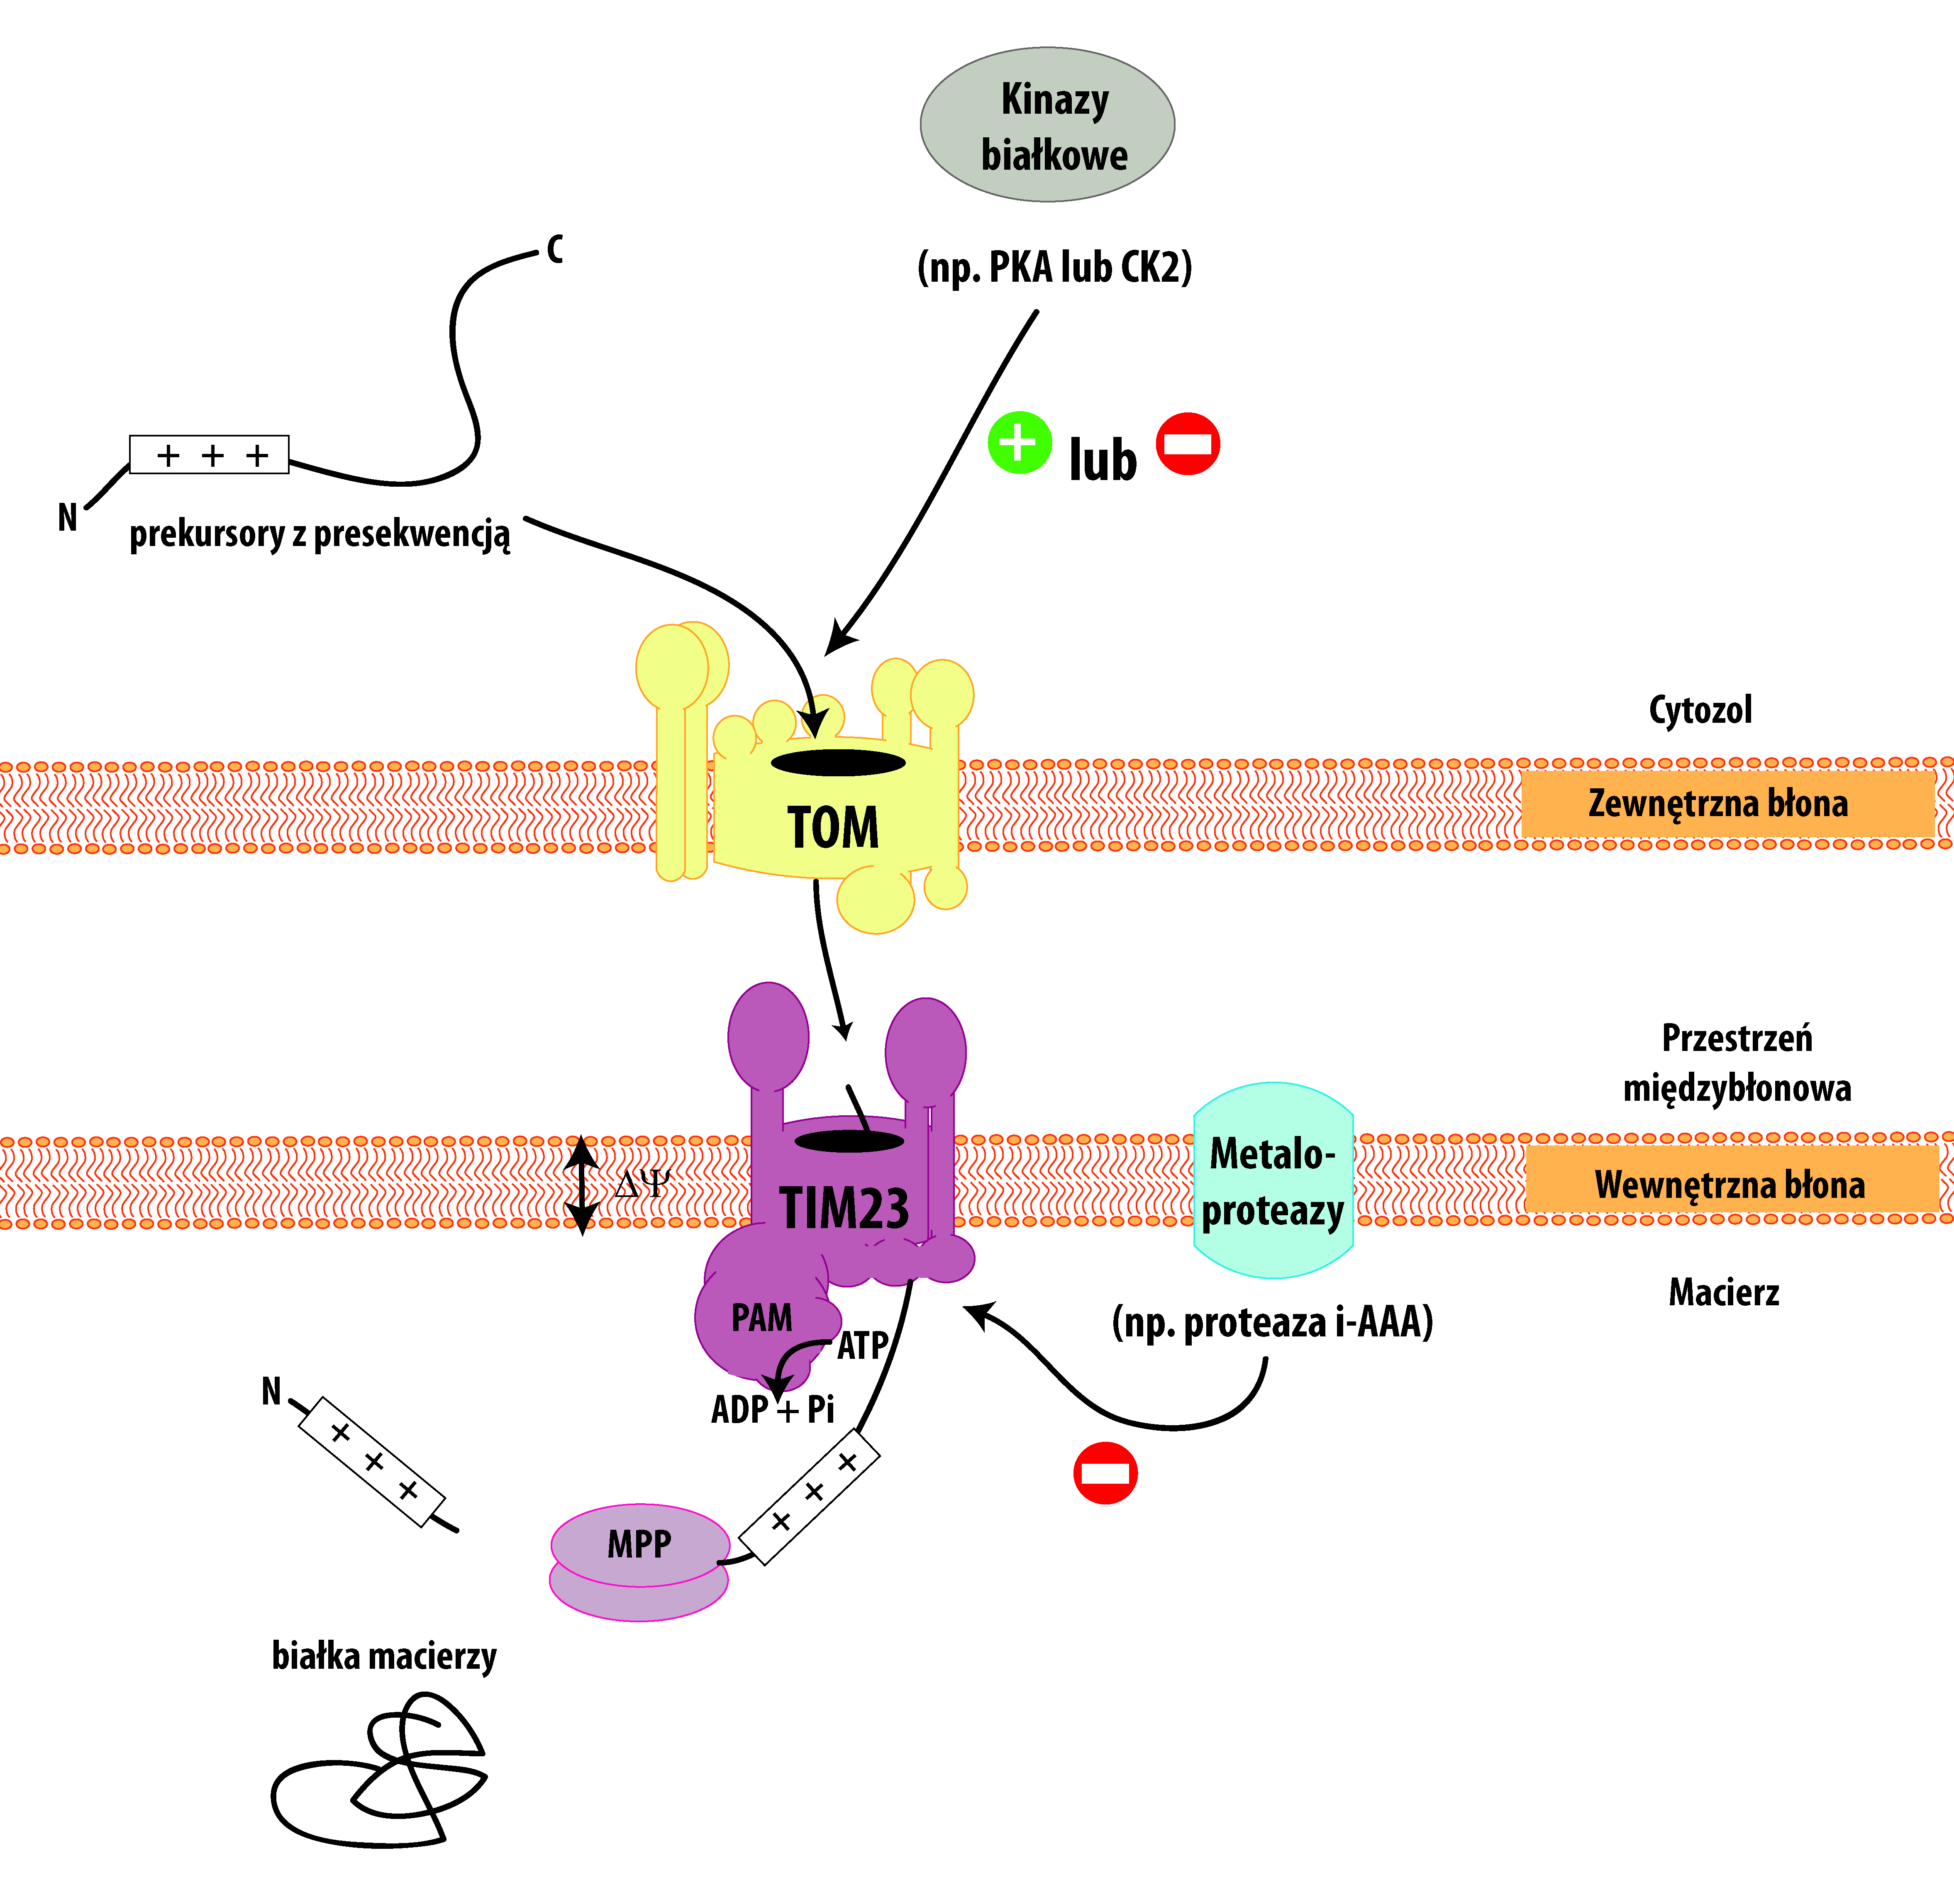 Schemat przedstawia główną ścieżkę importu prekursorów białek do mitochondrium. Większość białek mitochondrialnych syntetyzowana jest w cytozolu w formie prekursorów, które transportowane są do mitochondrium dzięki posiadaniu sekwencji kierującej (tzw. presekwencji). Prekursory te pokonują barierę zewnętrznej błony mitochondrialnej wykorzystując kompleks TOM, a następnie transportowane są poprzez wewnętrzną błonę mitochondrialną do macierzy z udziałem kompleksu TIM23. Import białek do mitochondrium może być regulowany posttranslacyjnie m.in. poprzez fosforylację komponentów kompleksu TOM przez cytozolowe kinazy lub proteolizę kluczowych podjednostek kompleksu TIM23. Te mechanizmy są tematem niniejszego wykładu. 